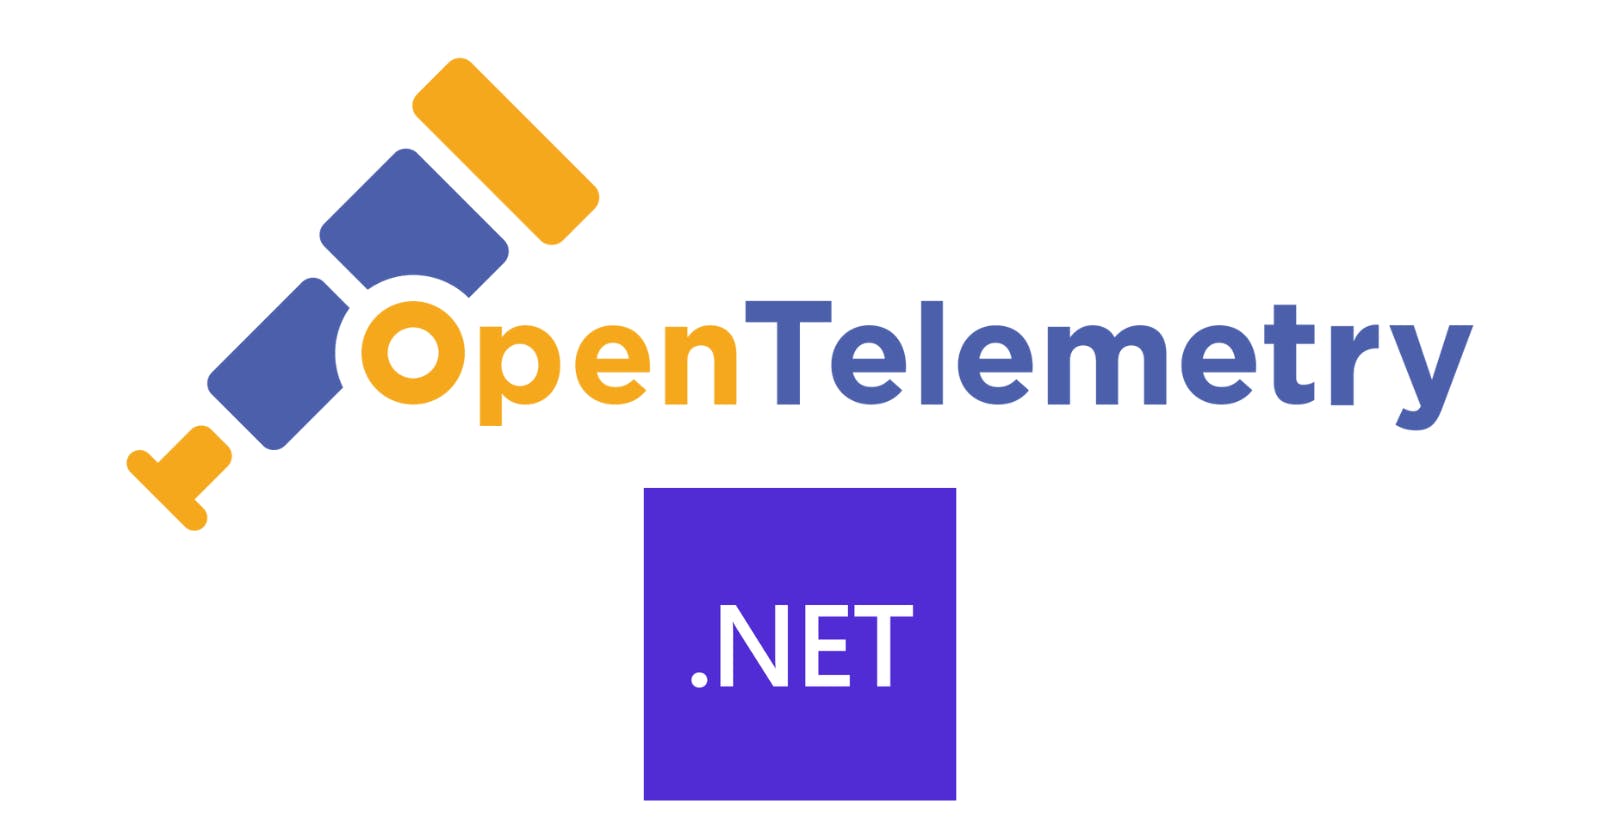 Observability with OpenTelemetry in .NET